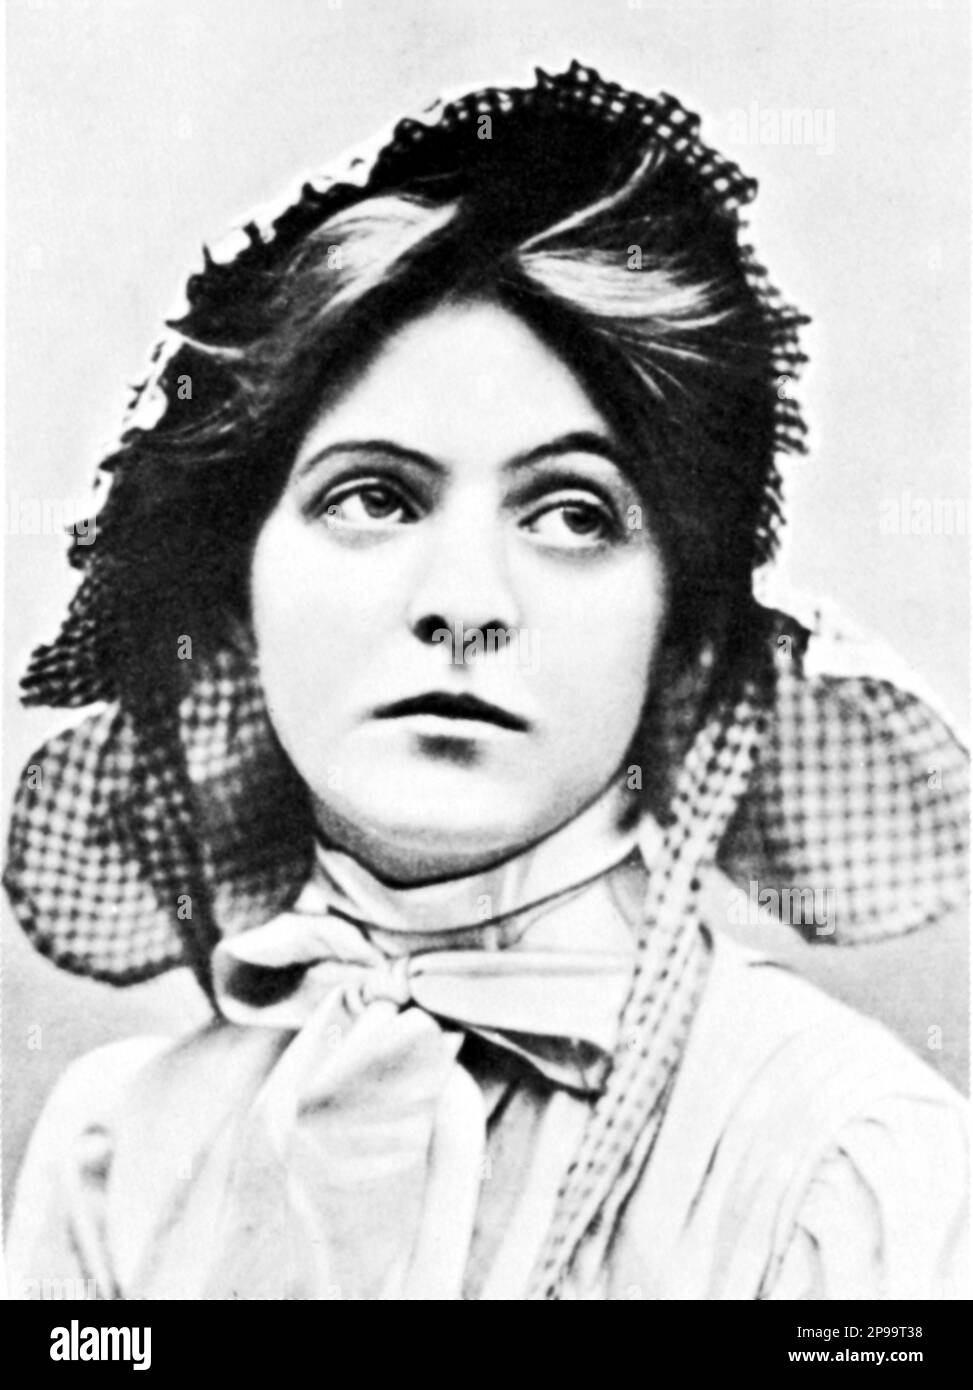 1910 Ca : La actriz de cine mudo MABEL TALIAFERRO ( New York 1887 - Honolulu 1979 ) en una pubblicidad todavía . Escenario estadounidense, y una actriz de pantalla silenciosa, conocida como El amor de las películas estadounidenses. Taliaferro descendió de una de las primeras familias que se establecieron en Virginia en el siglo 17th, los Taliaferros, cuyos orígenes se remontan al norte de Italia. En 1912, apareció en la versión cinematográfica de Cenicienta de Selig Studios, y continuó actuando en películas hasta su jubilación en 1921. En 1940, ella apareció en su foto final, My Love Came Back. Taliaferro era una hermana Foto de stock